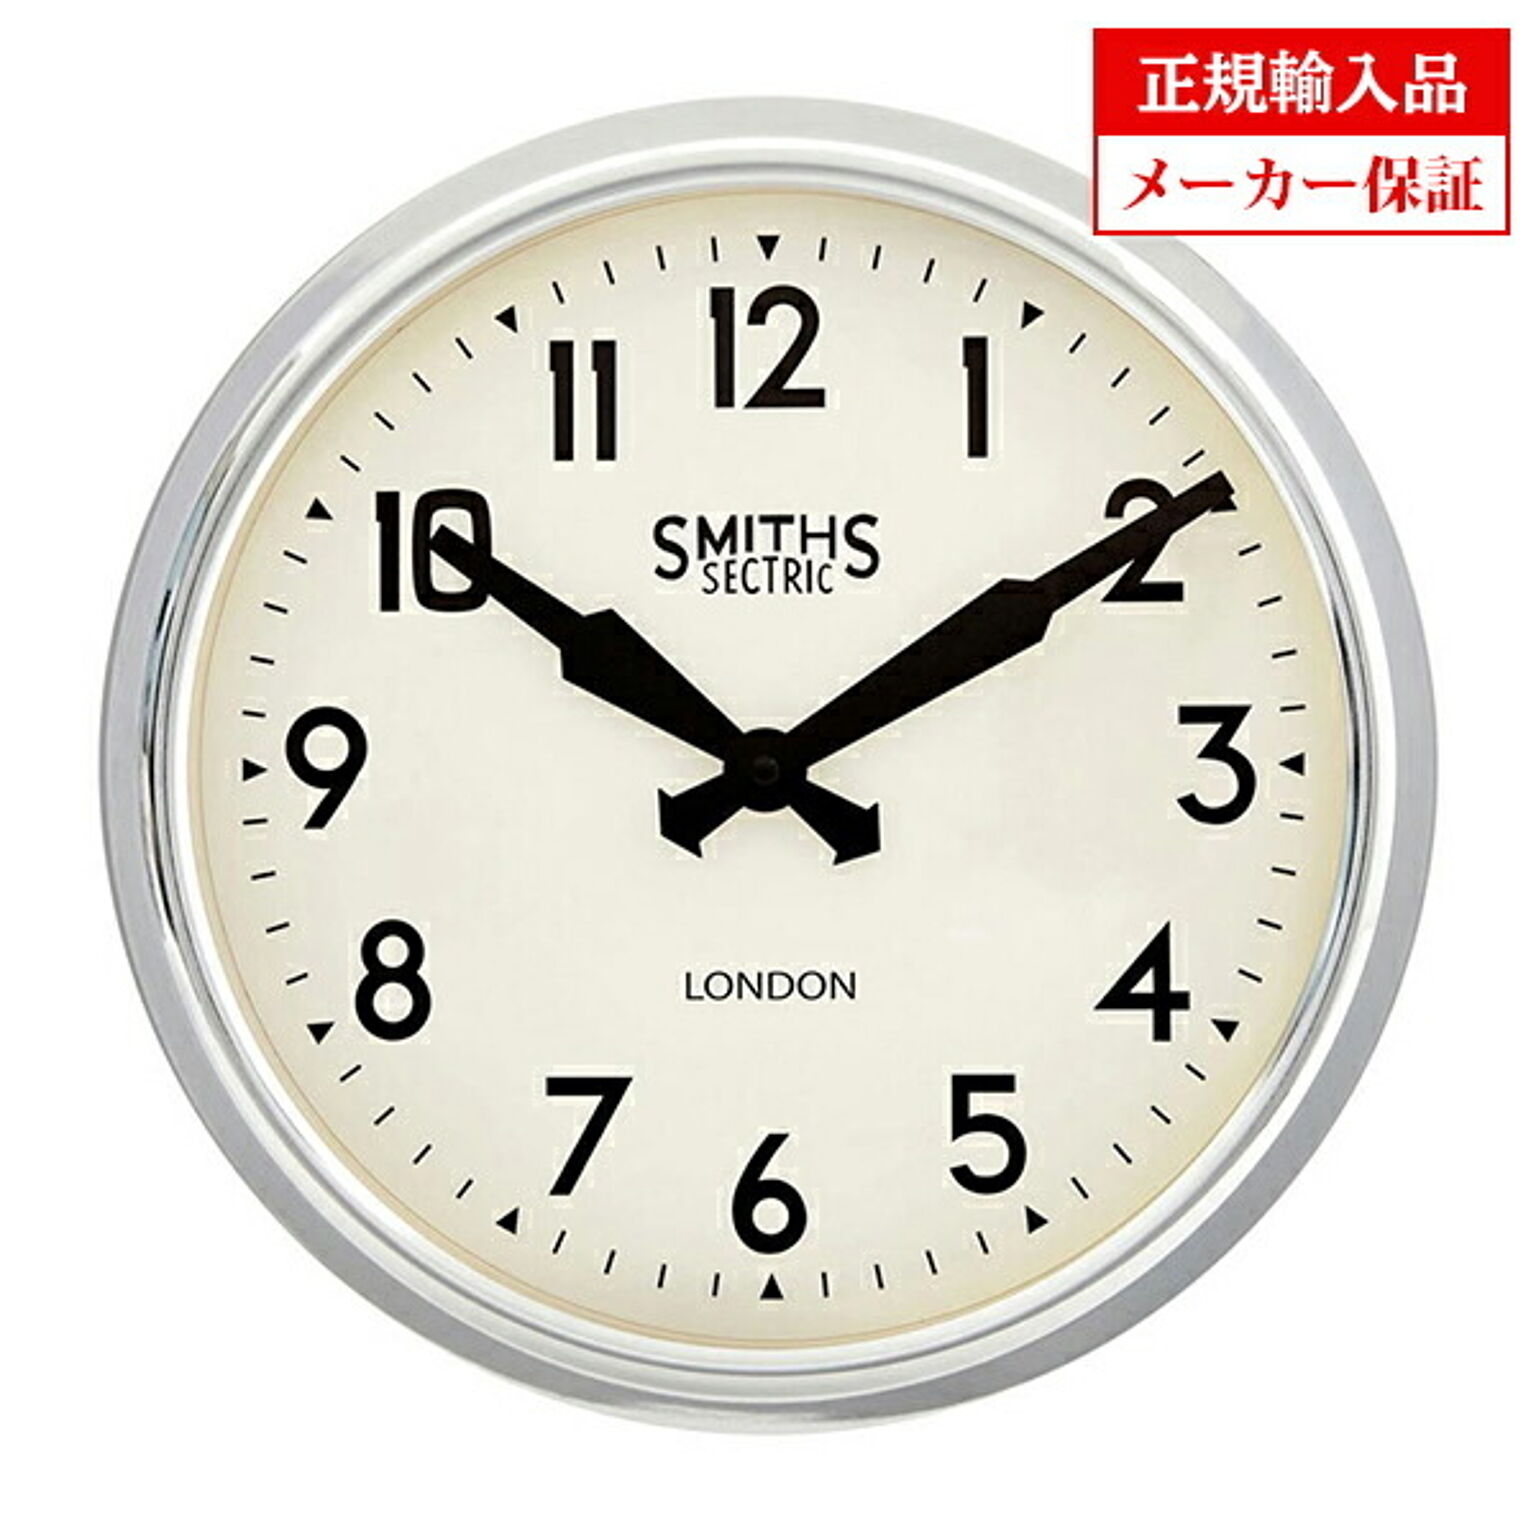 イギリス ロジャーラッセル 掛け時計 [[SM/RETRO/CHROME] ROGER LASCELLES レトロ スミスデザイン 正規輸入品